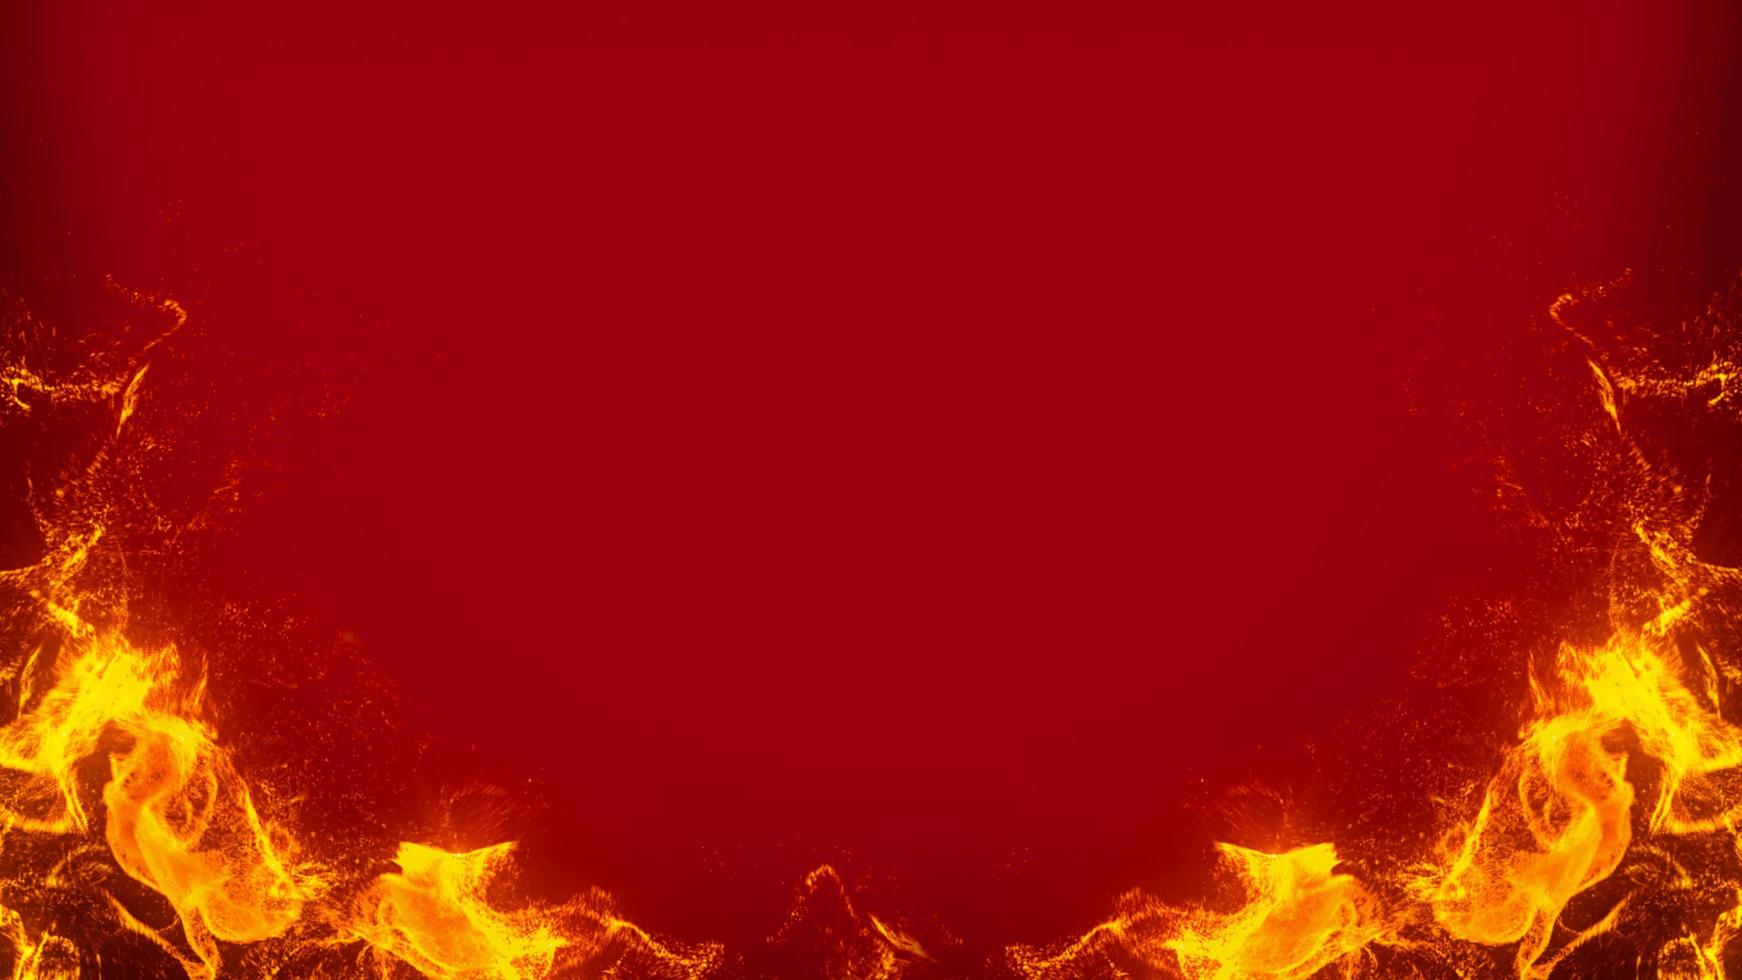 quadro de fogo em fundo vermelho foto